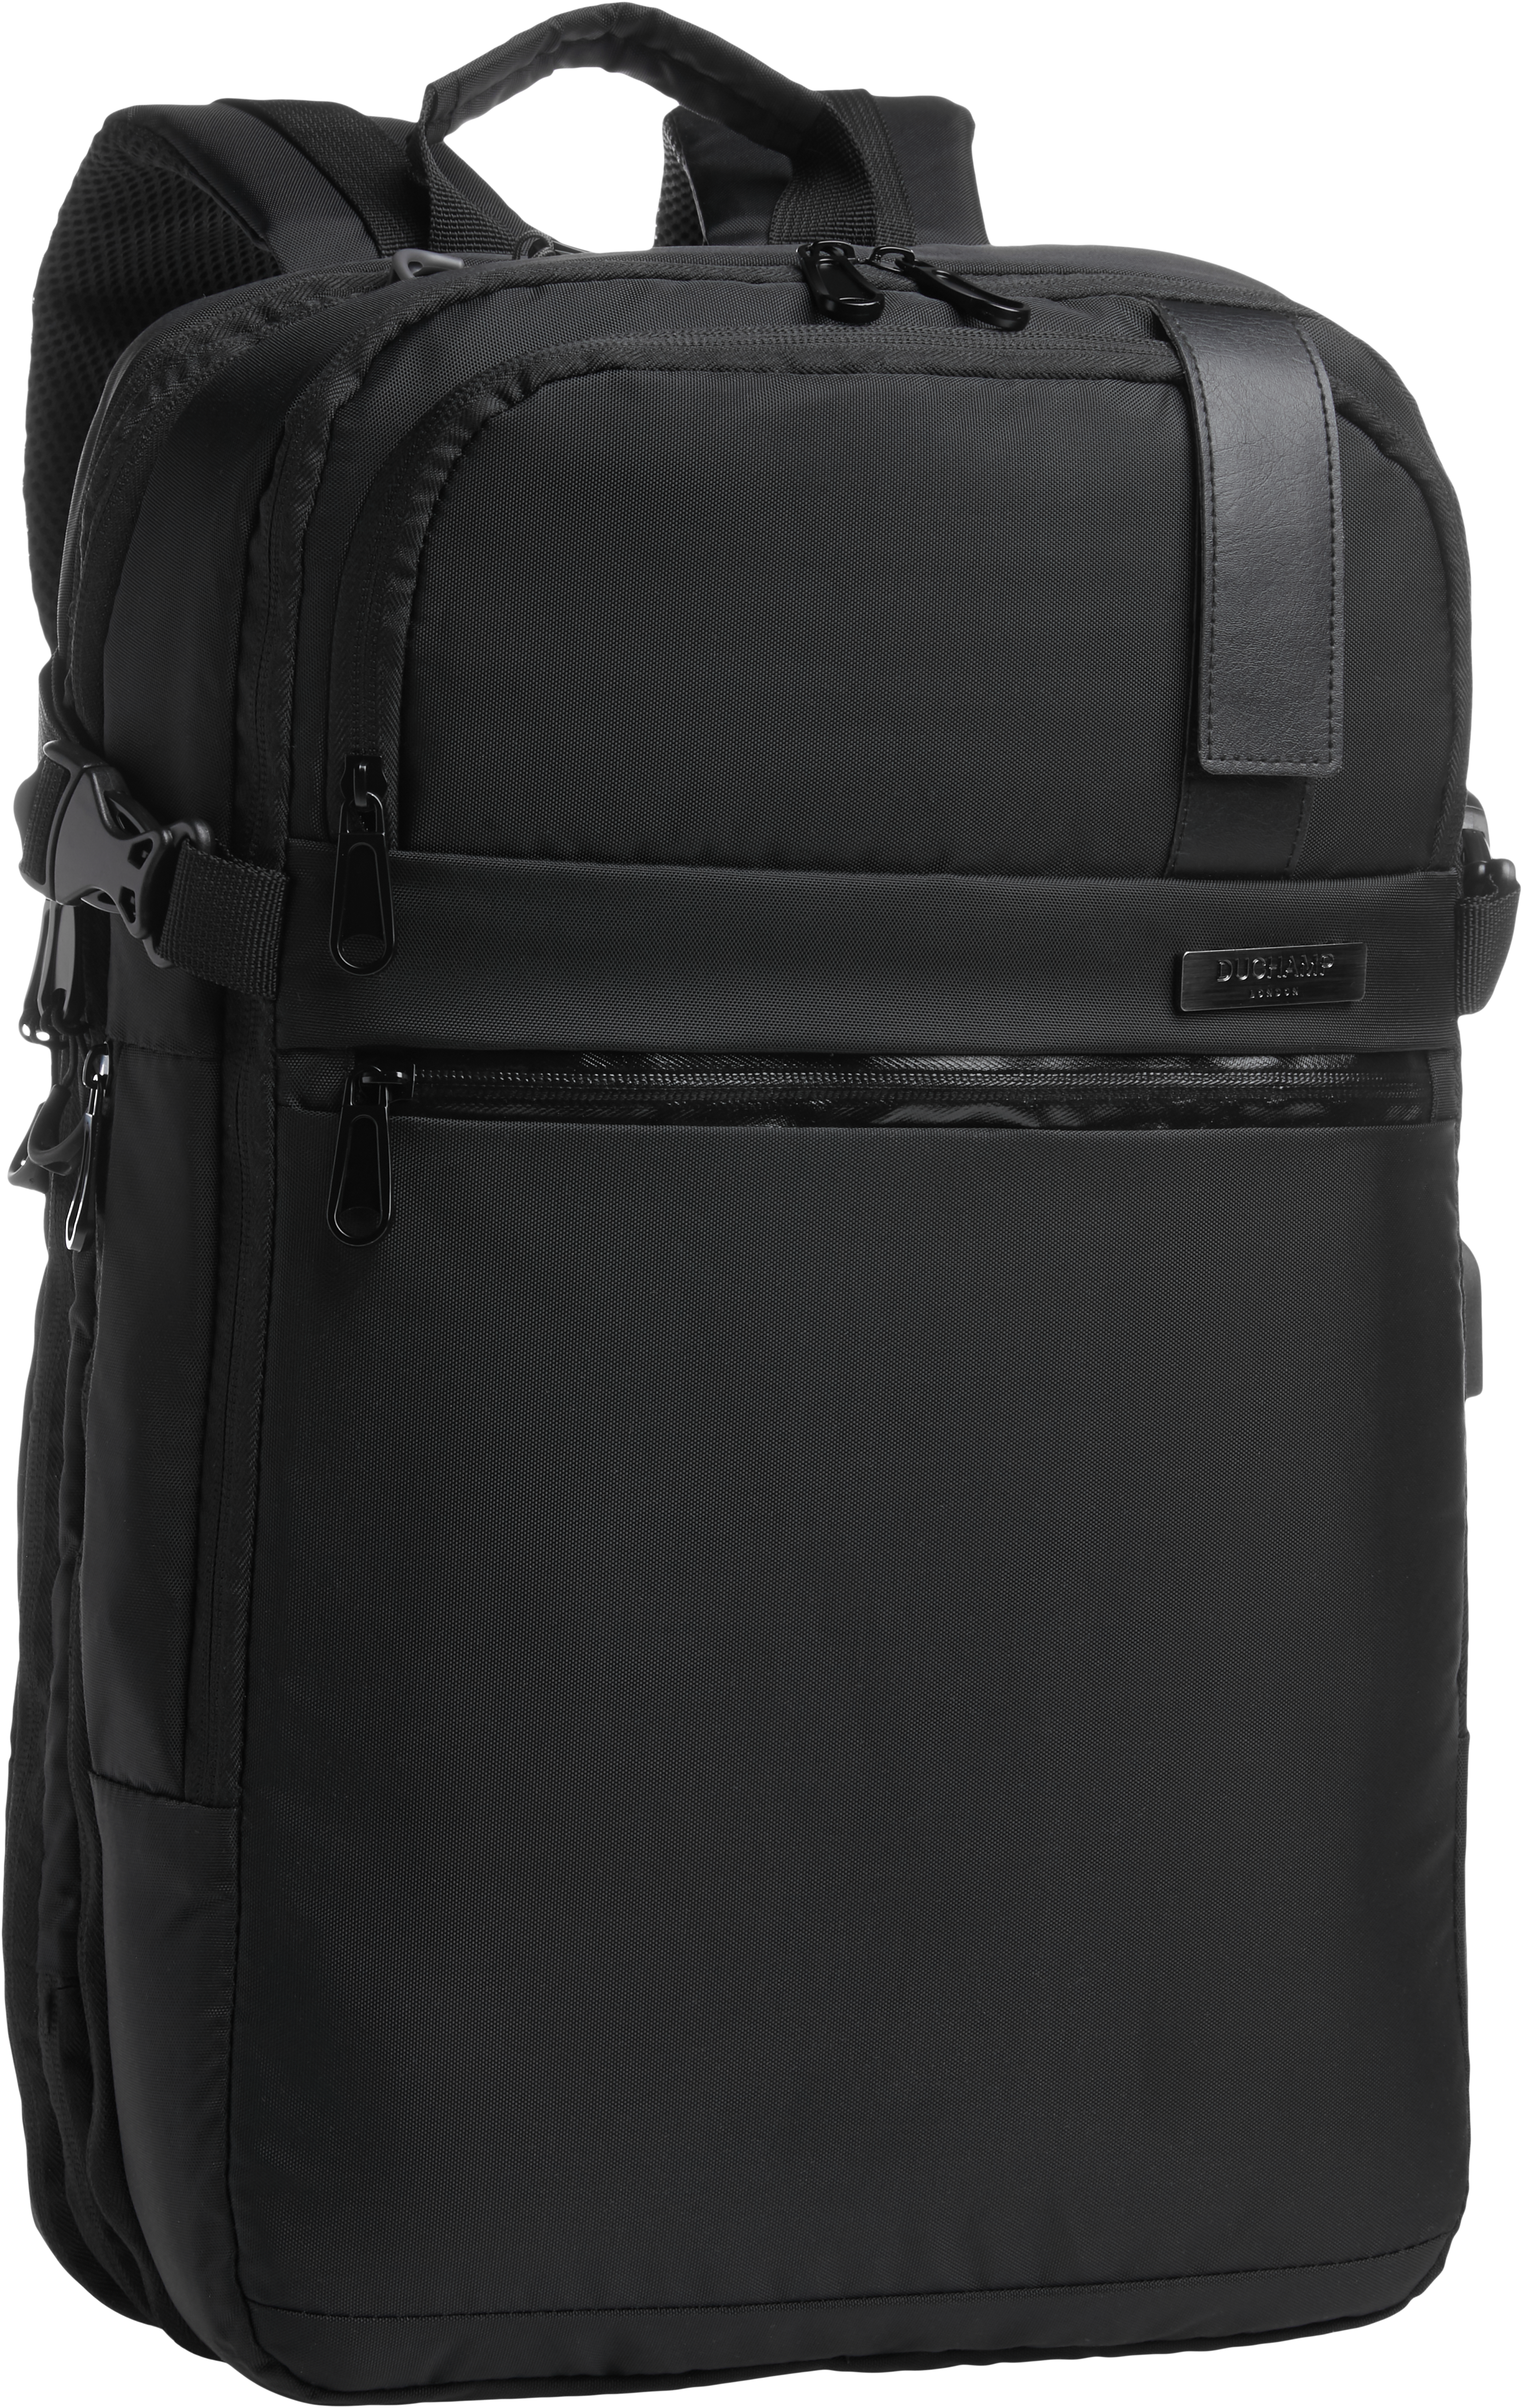 Duchamp Black Expandable Backpack Suitcase - Men's Accessories | Men's ...